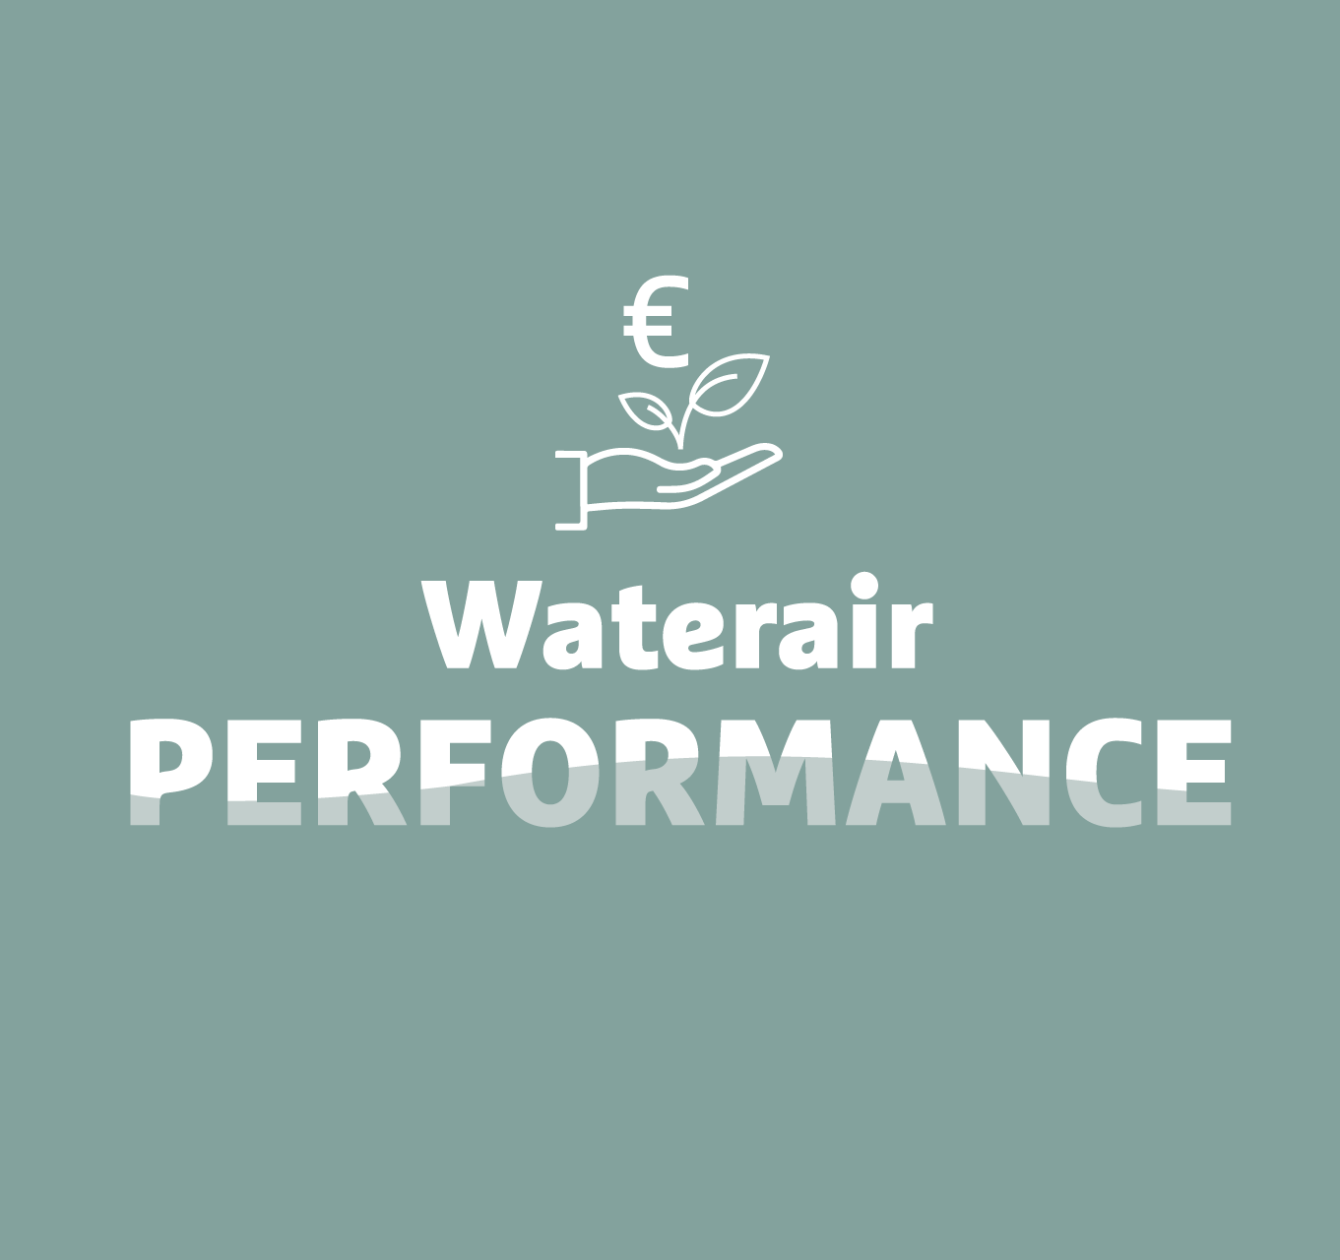 Waterair Performance: Ihr kostengünstiger und umweltfreundlicher Pool.